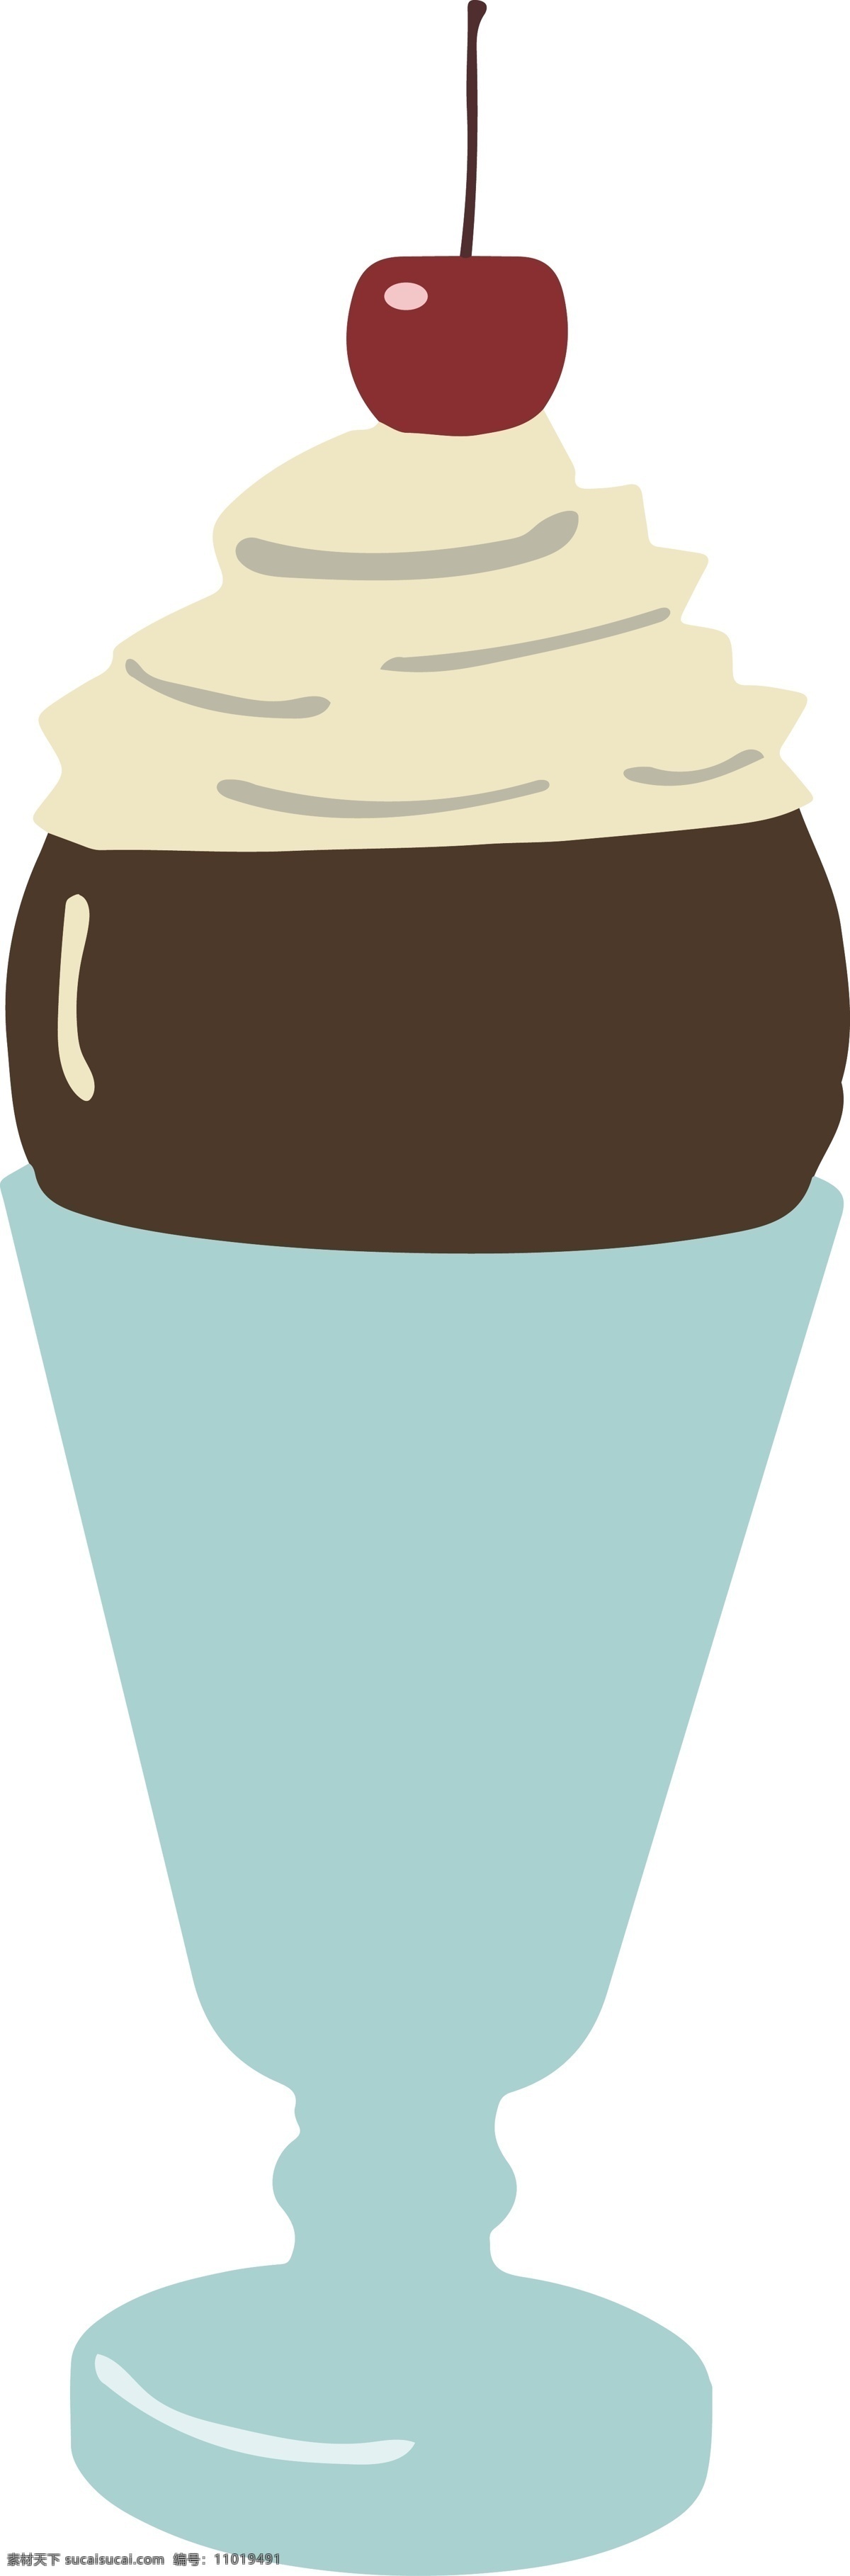 夏日 卡通 冰淇淋 图形 商用 元素 冰淇淋杯 清凉 樱桃 食物 夏日冰淇淋 解暑